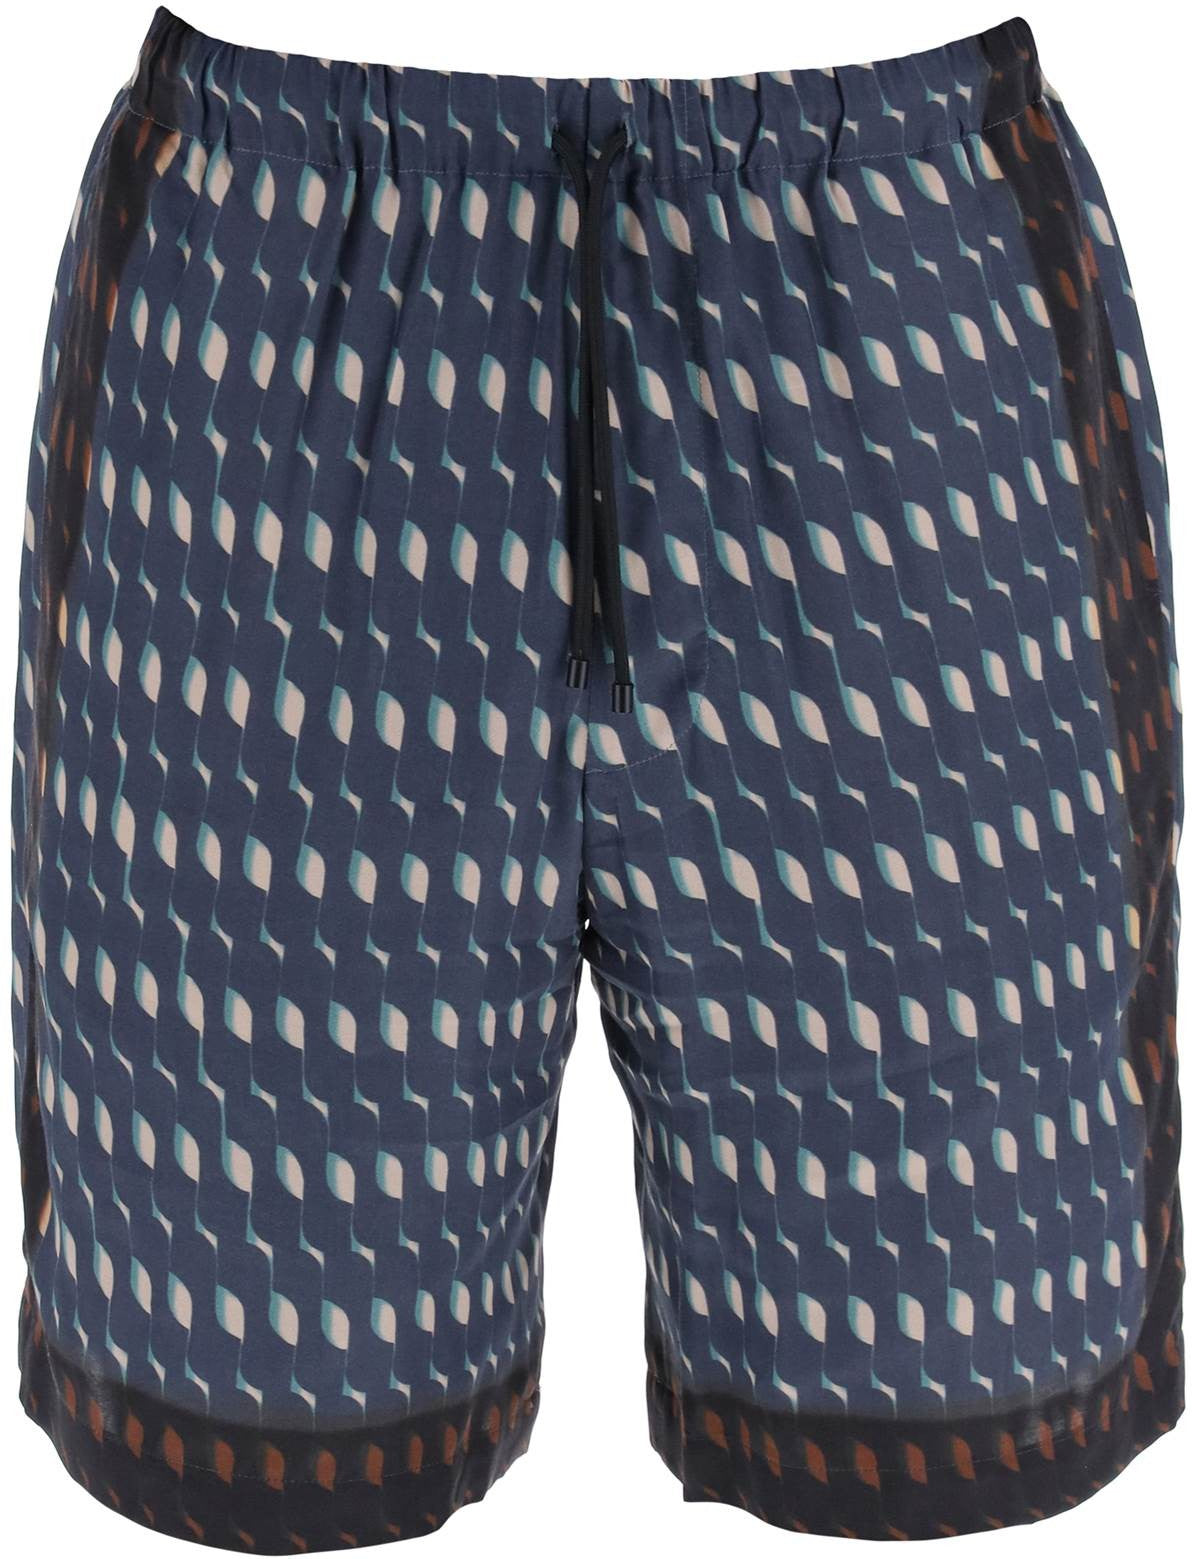 dries-van-noten-s-wave-printed-bermuda-shorts.jpg